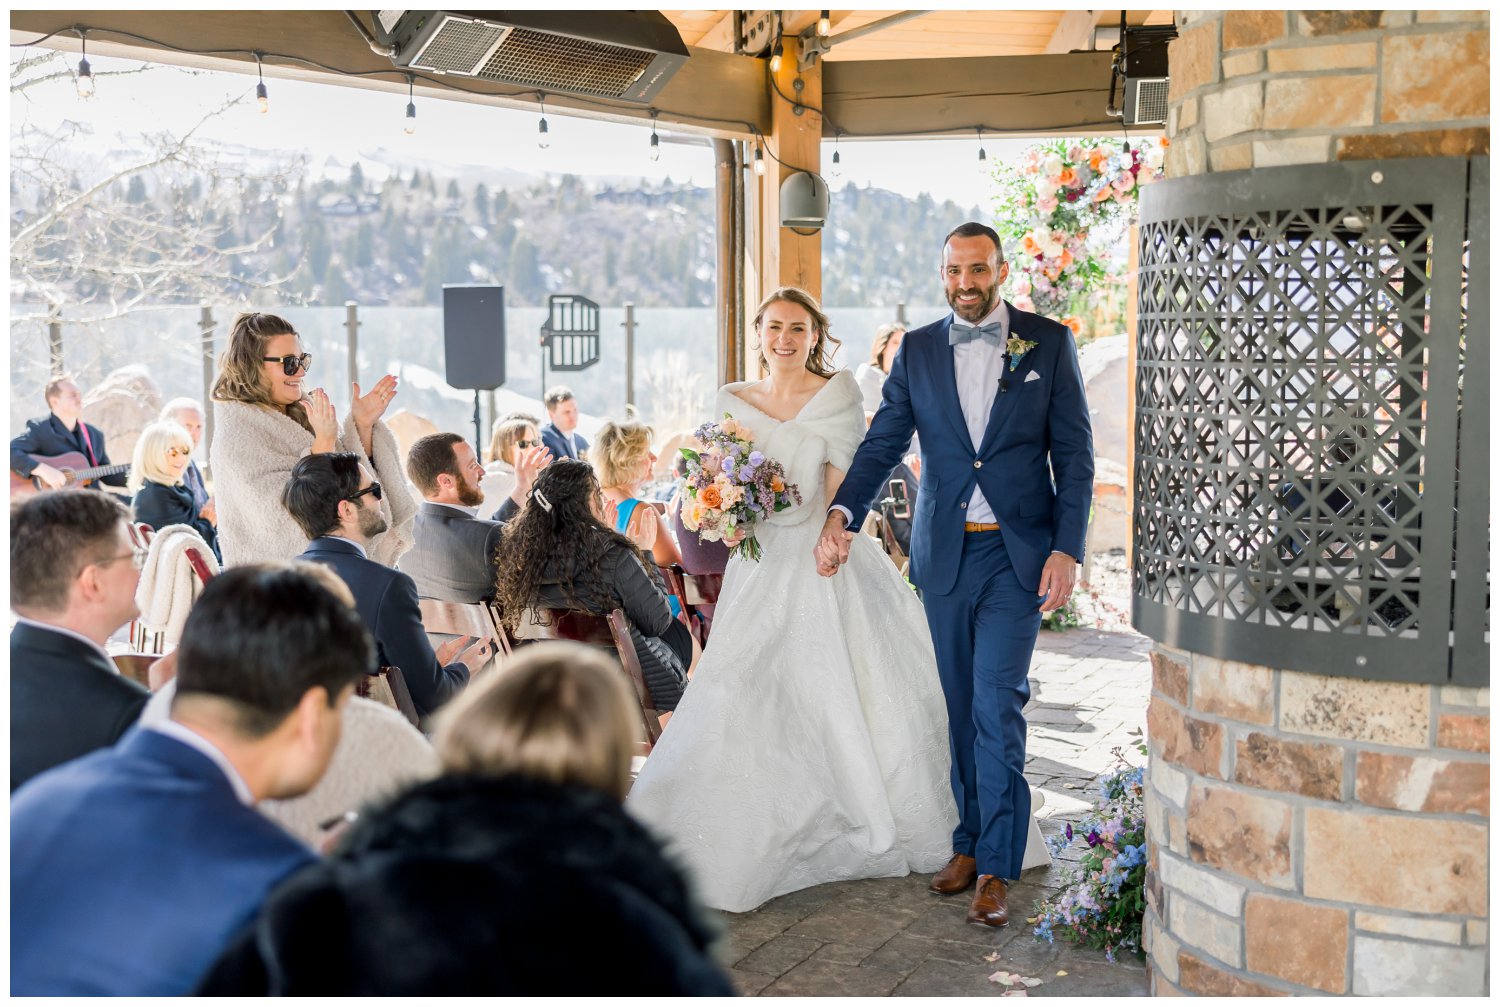 St. Regis Deer Valley Wedding in Park City Utah